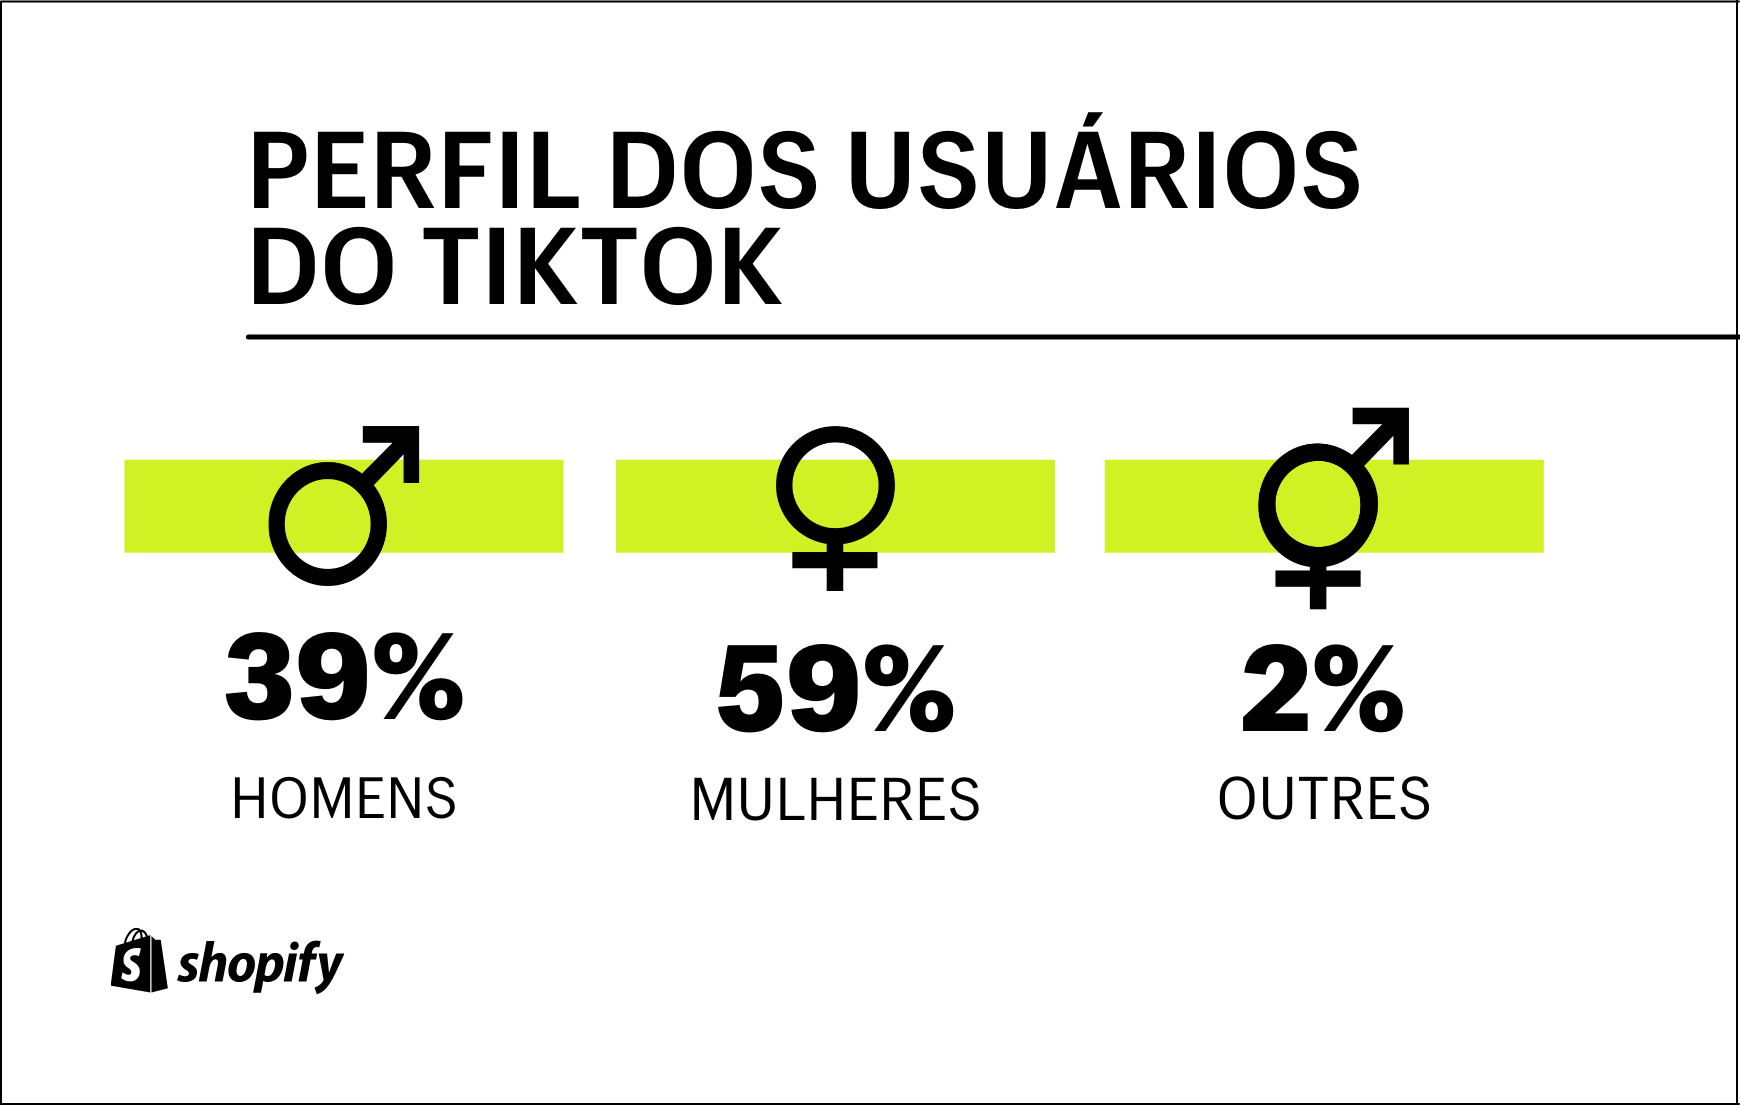 Infográfico com fundo branco. No primeiro plano, em verde e preto, há as informações sobre o perfil demográfico dos usuários do TikTok: 59% são mulheres, 39% são homens e 2% se identificam como outros.